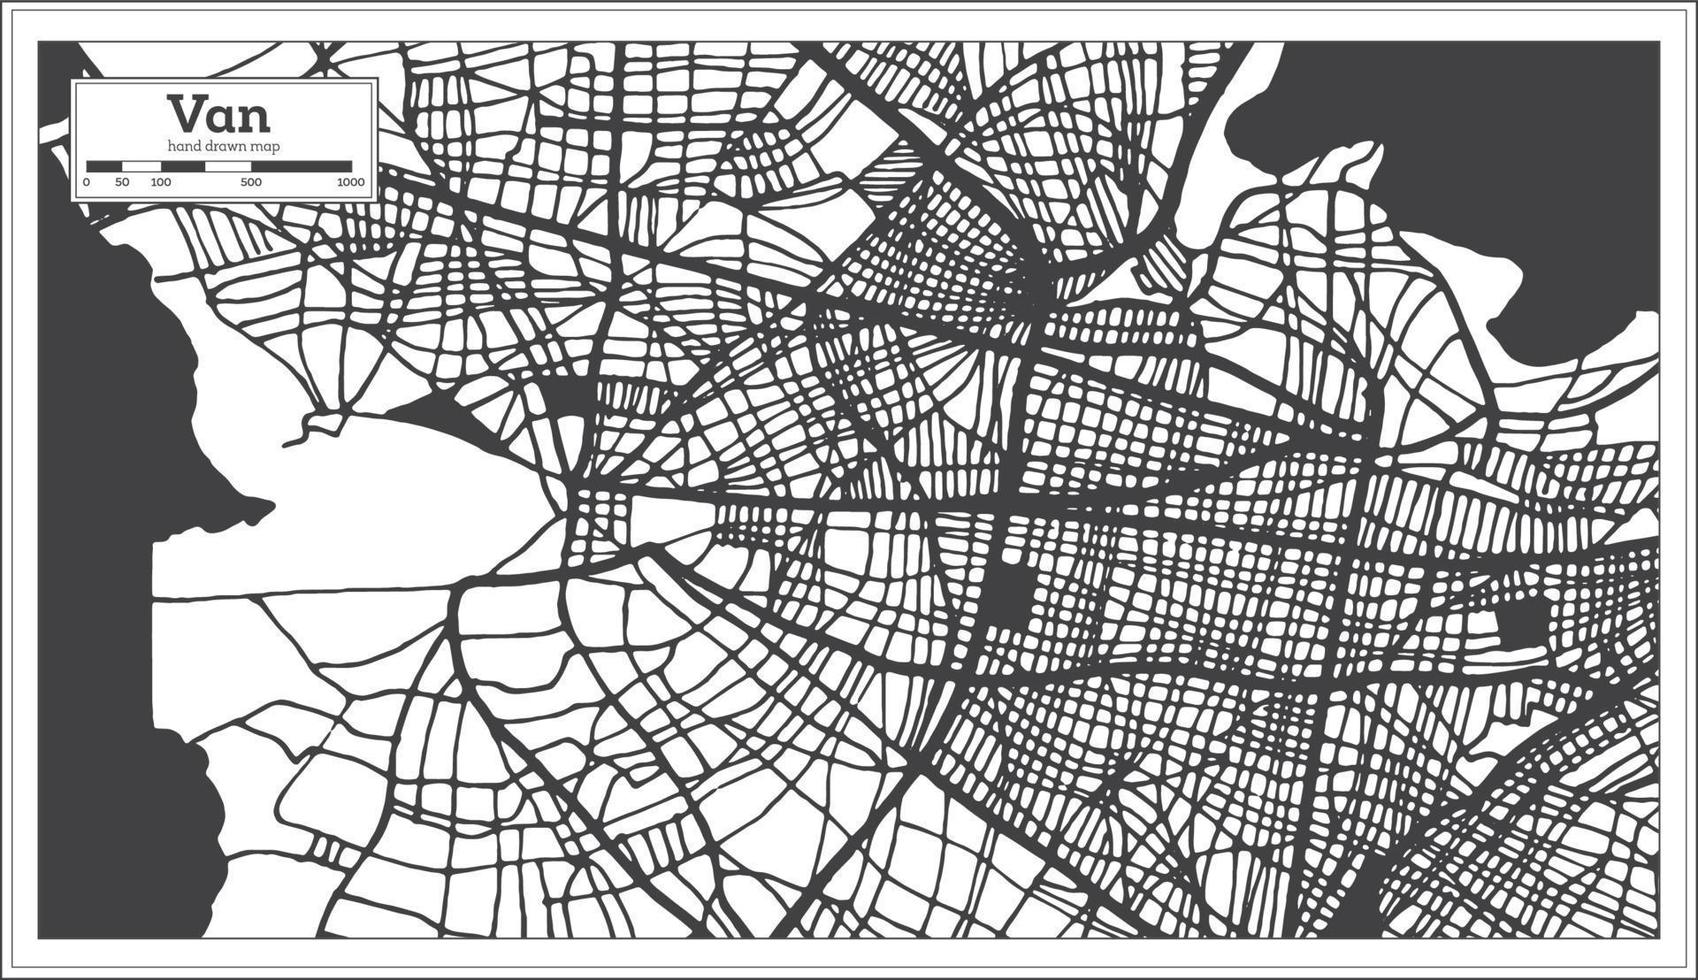 van türkei stadtplan in schwarz und weiß im retro-stil. Übersichtskarte. vektor